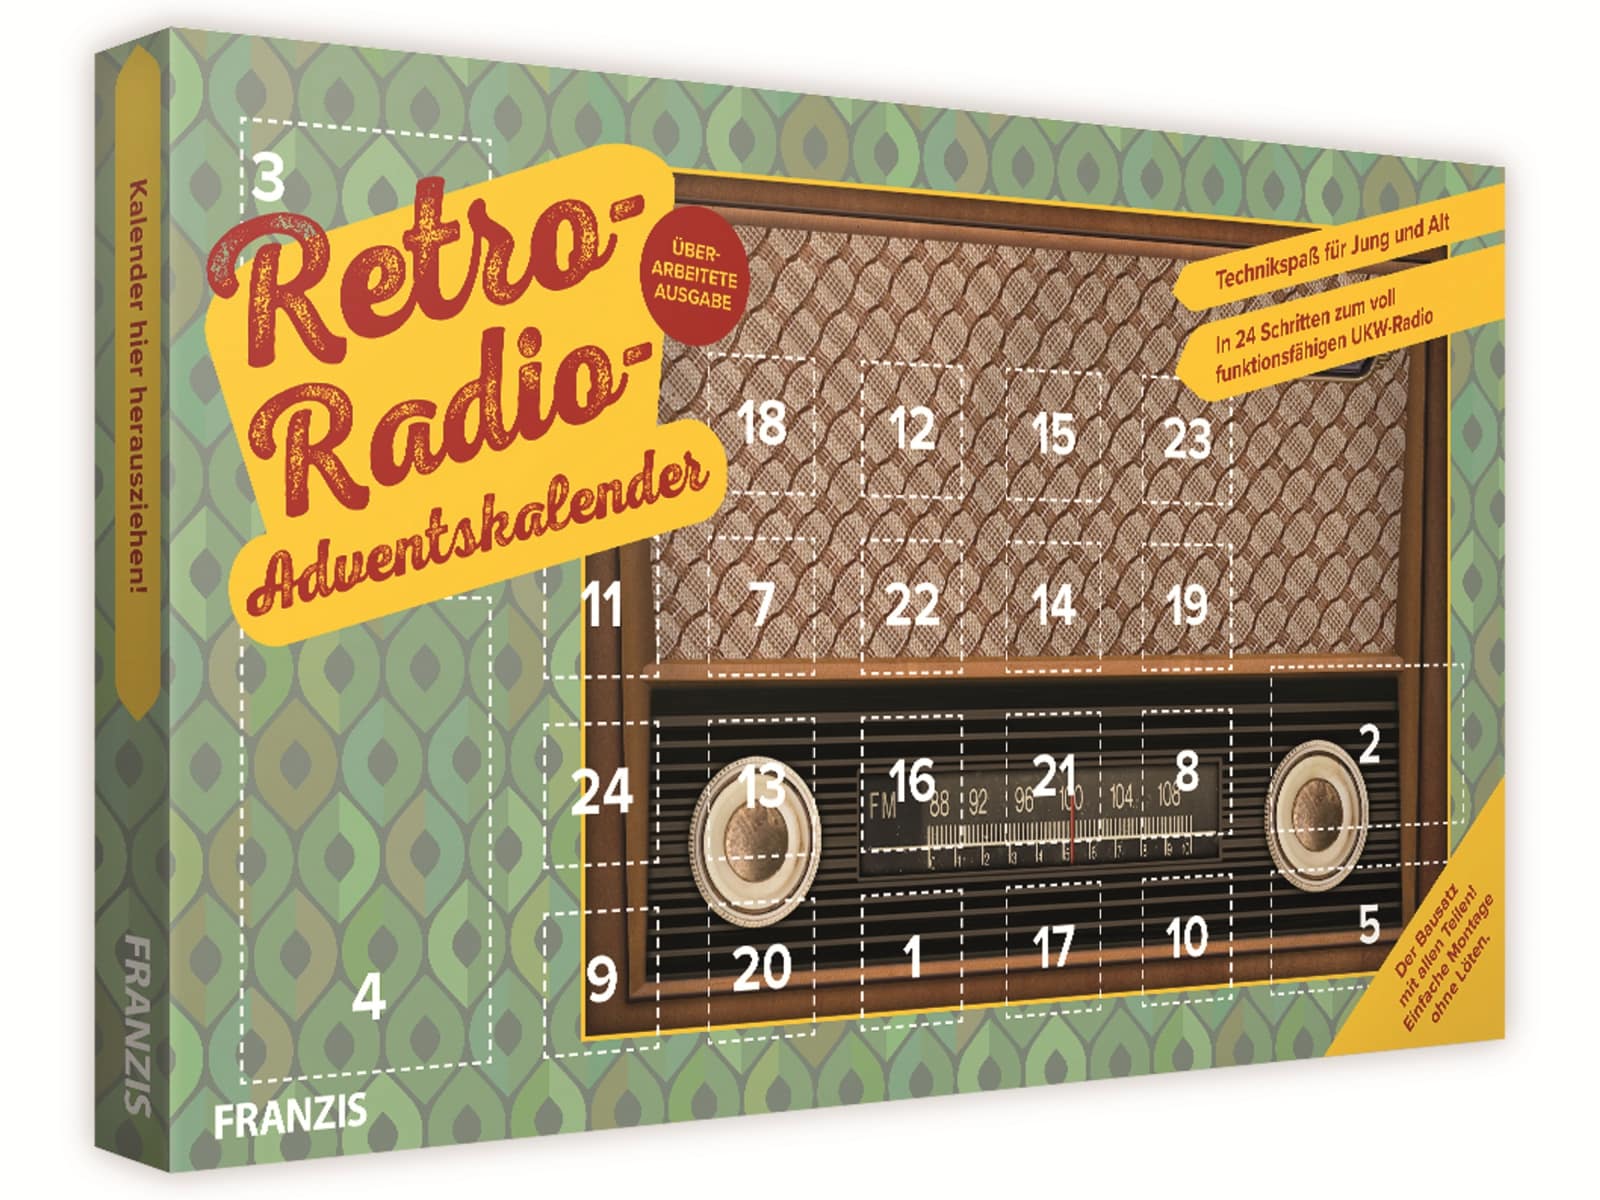 FRANZIS Adventskalender, 67078, Retro Radio Adventskalender